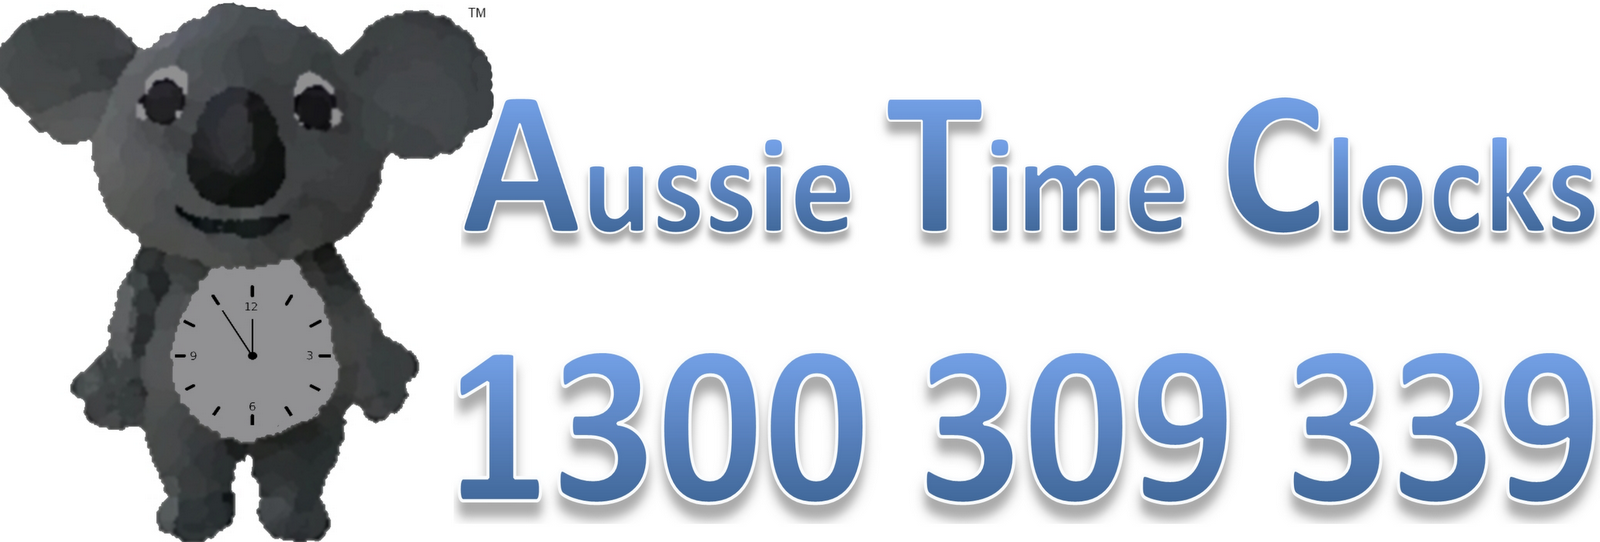 Aussie Time Clocks Blog